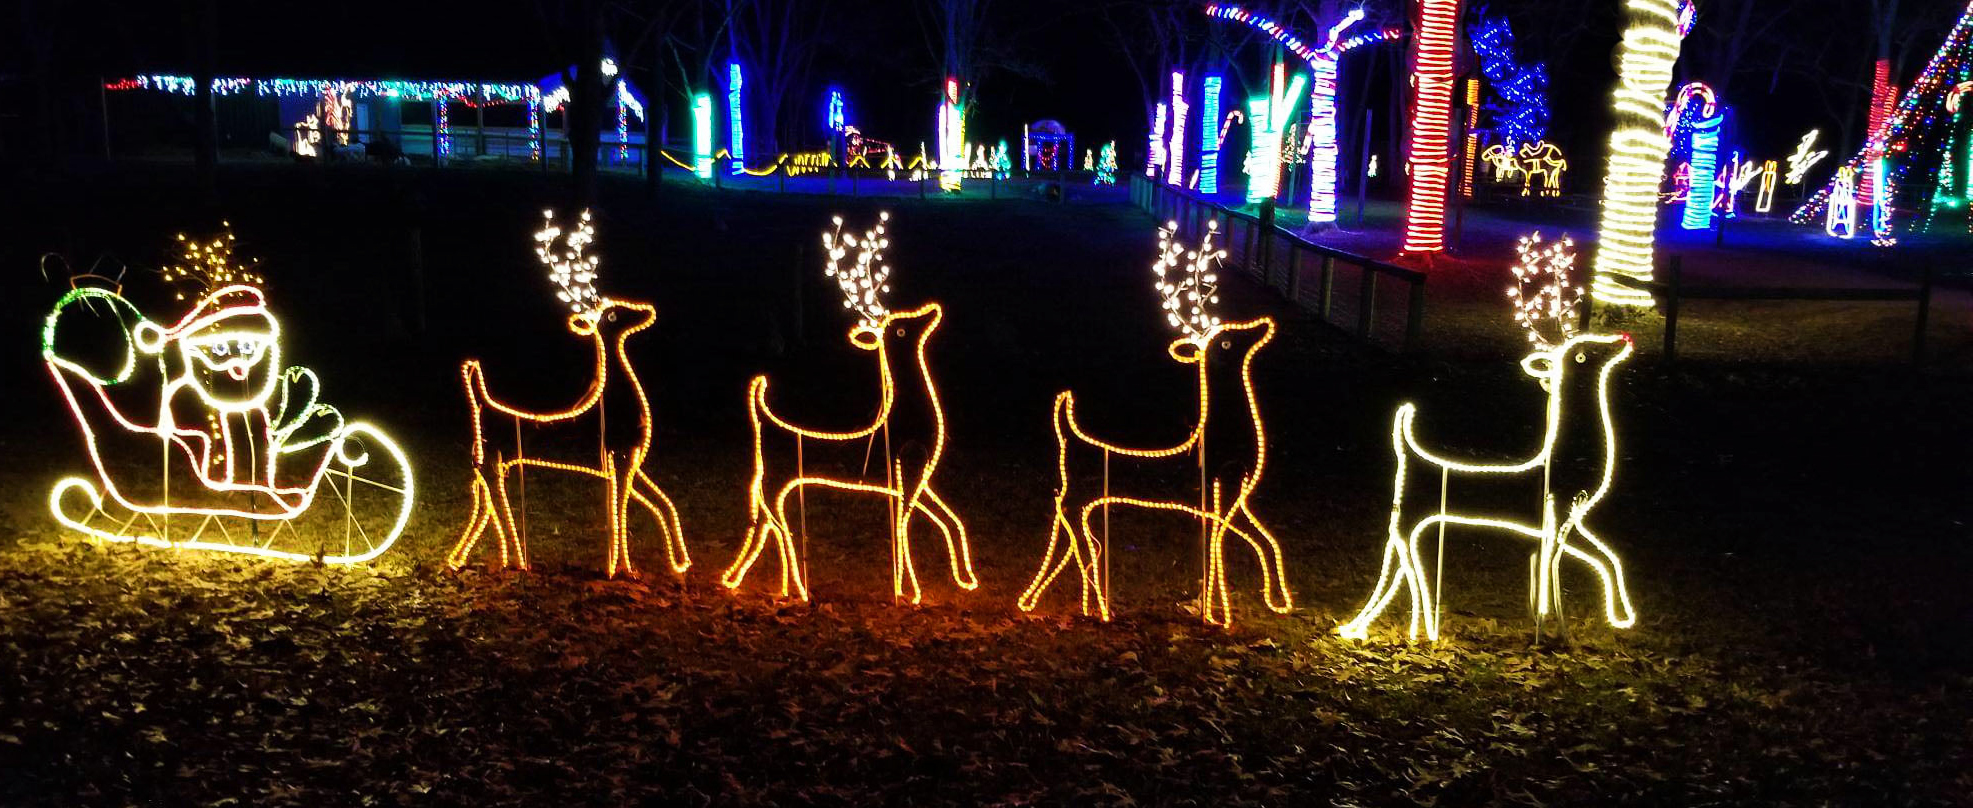 Safari Lights: A Drive-Thru Christmas Lights Display In Alabama